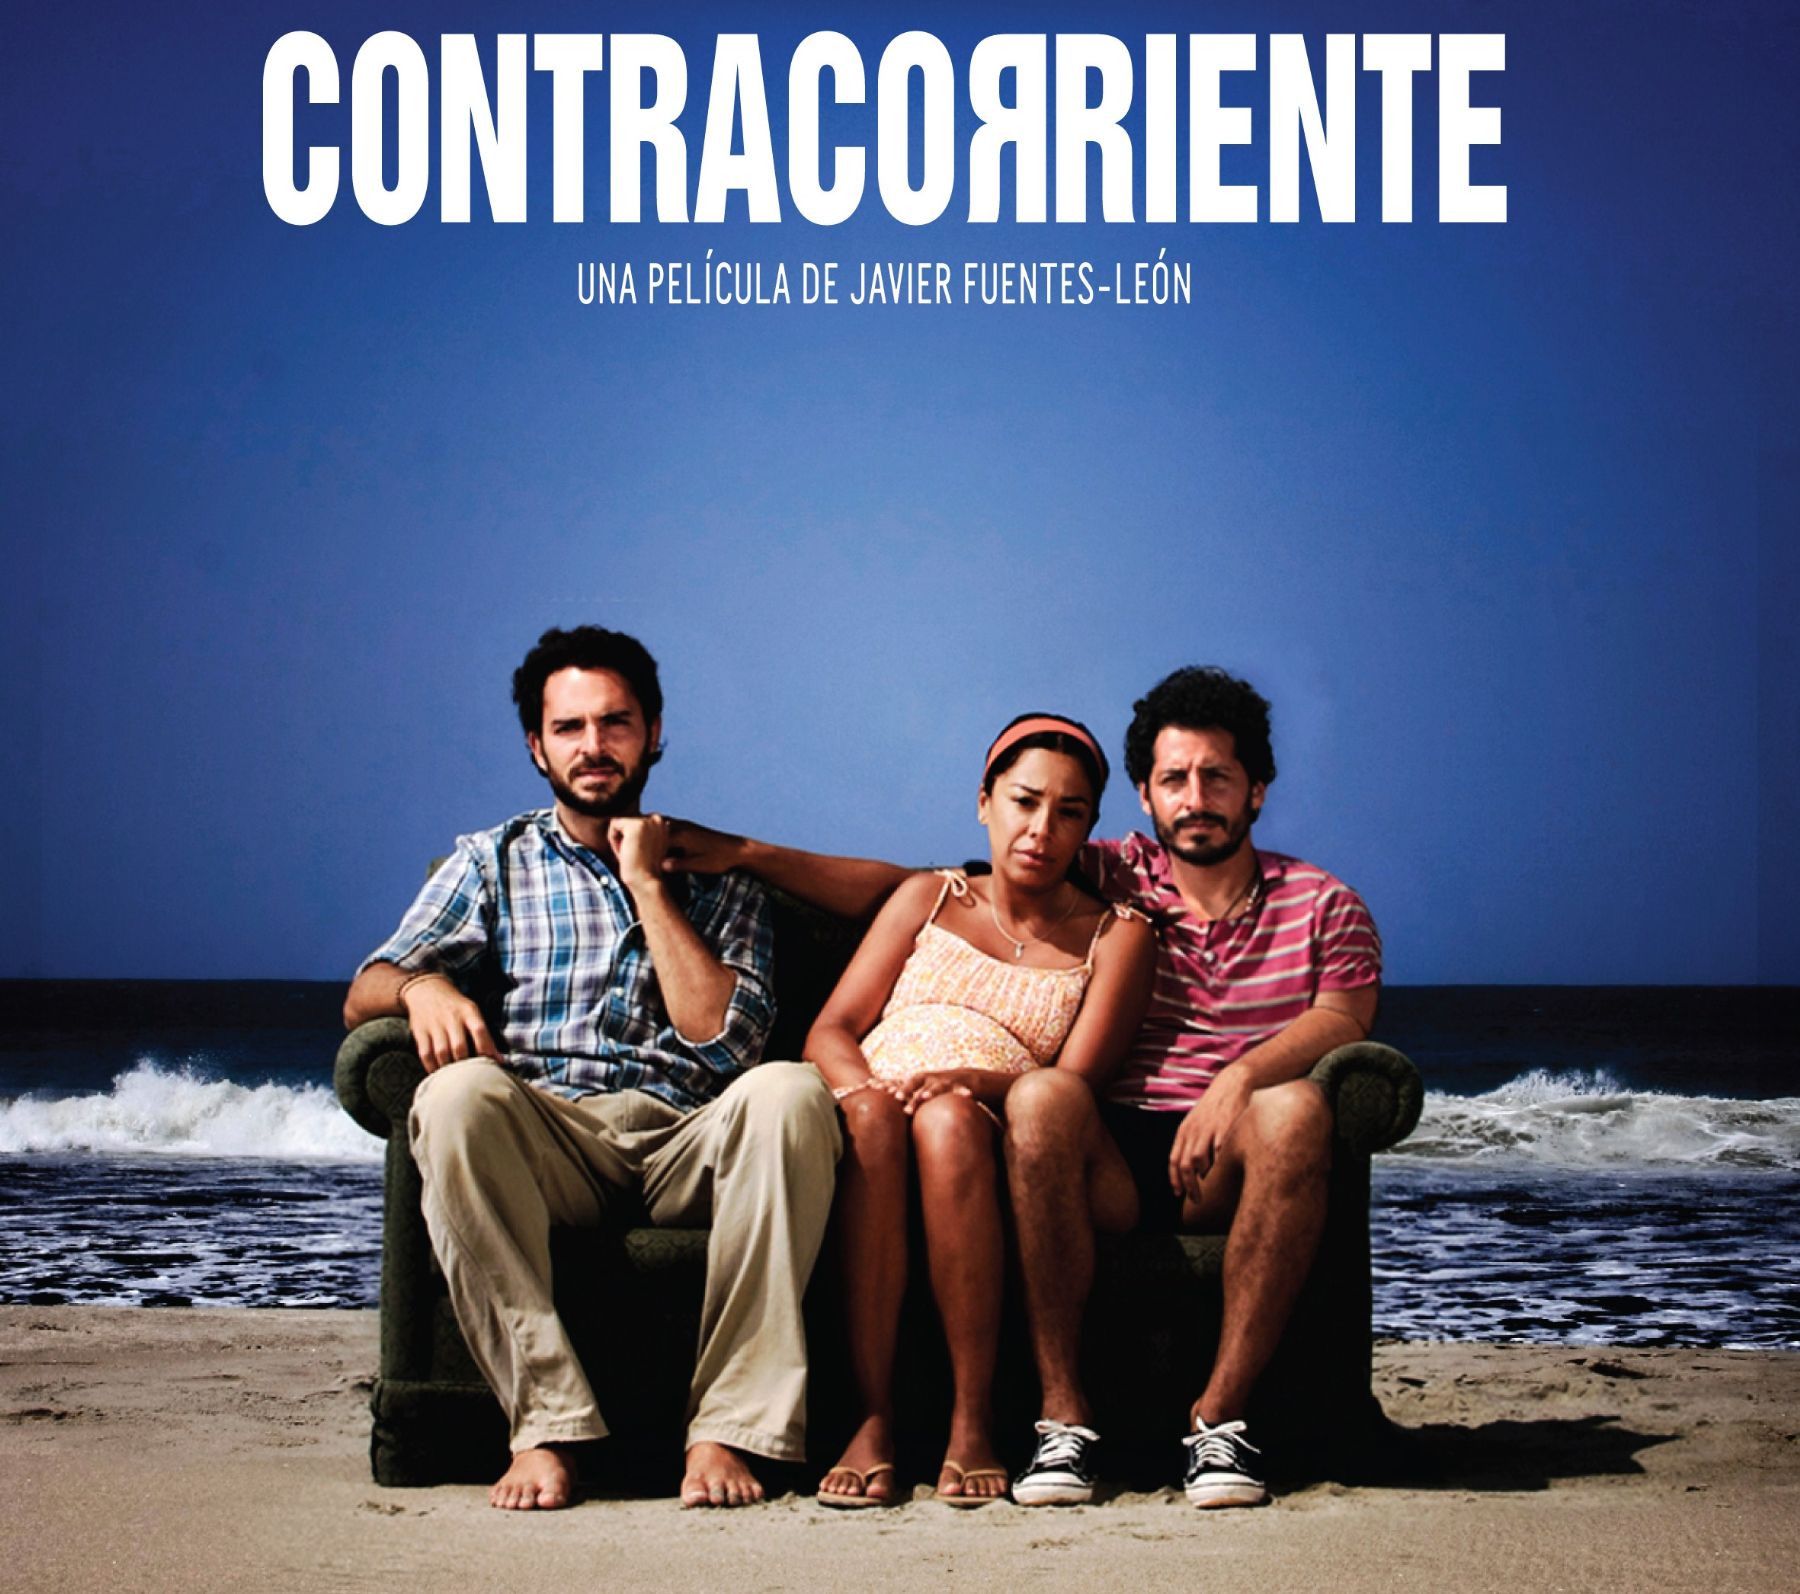 Película peruana Contracorriente, de Javier Fuentes León, compite con otros 64 filmes para ser nominada al Oscar.